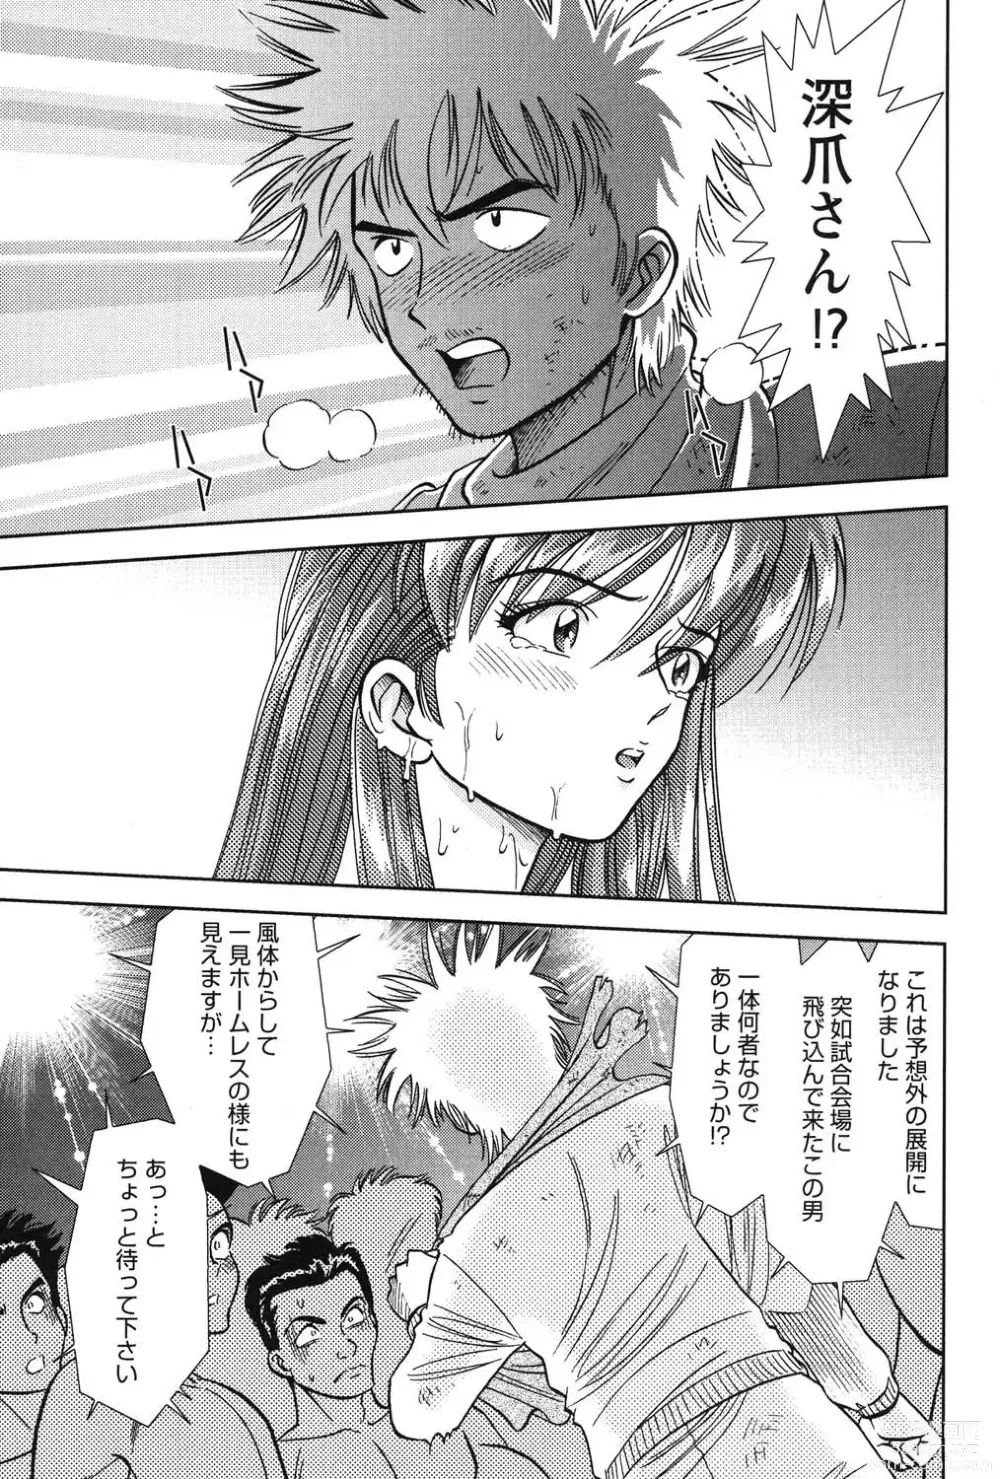 Page 220 of manga Bambina Oiroke  Battle  Hen